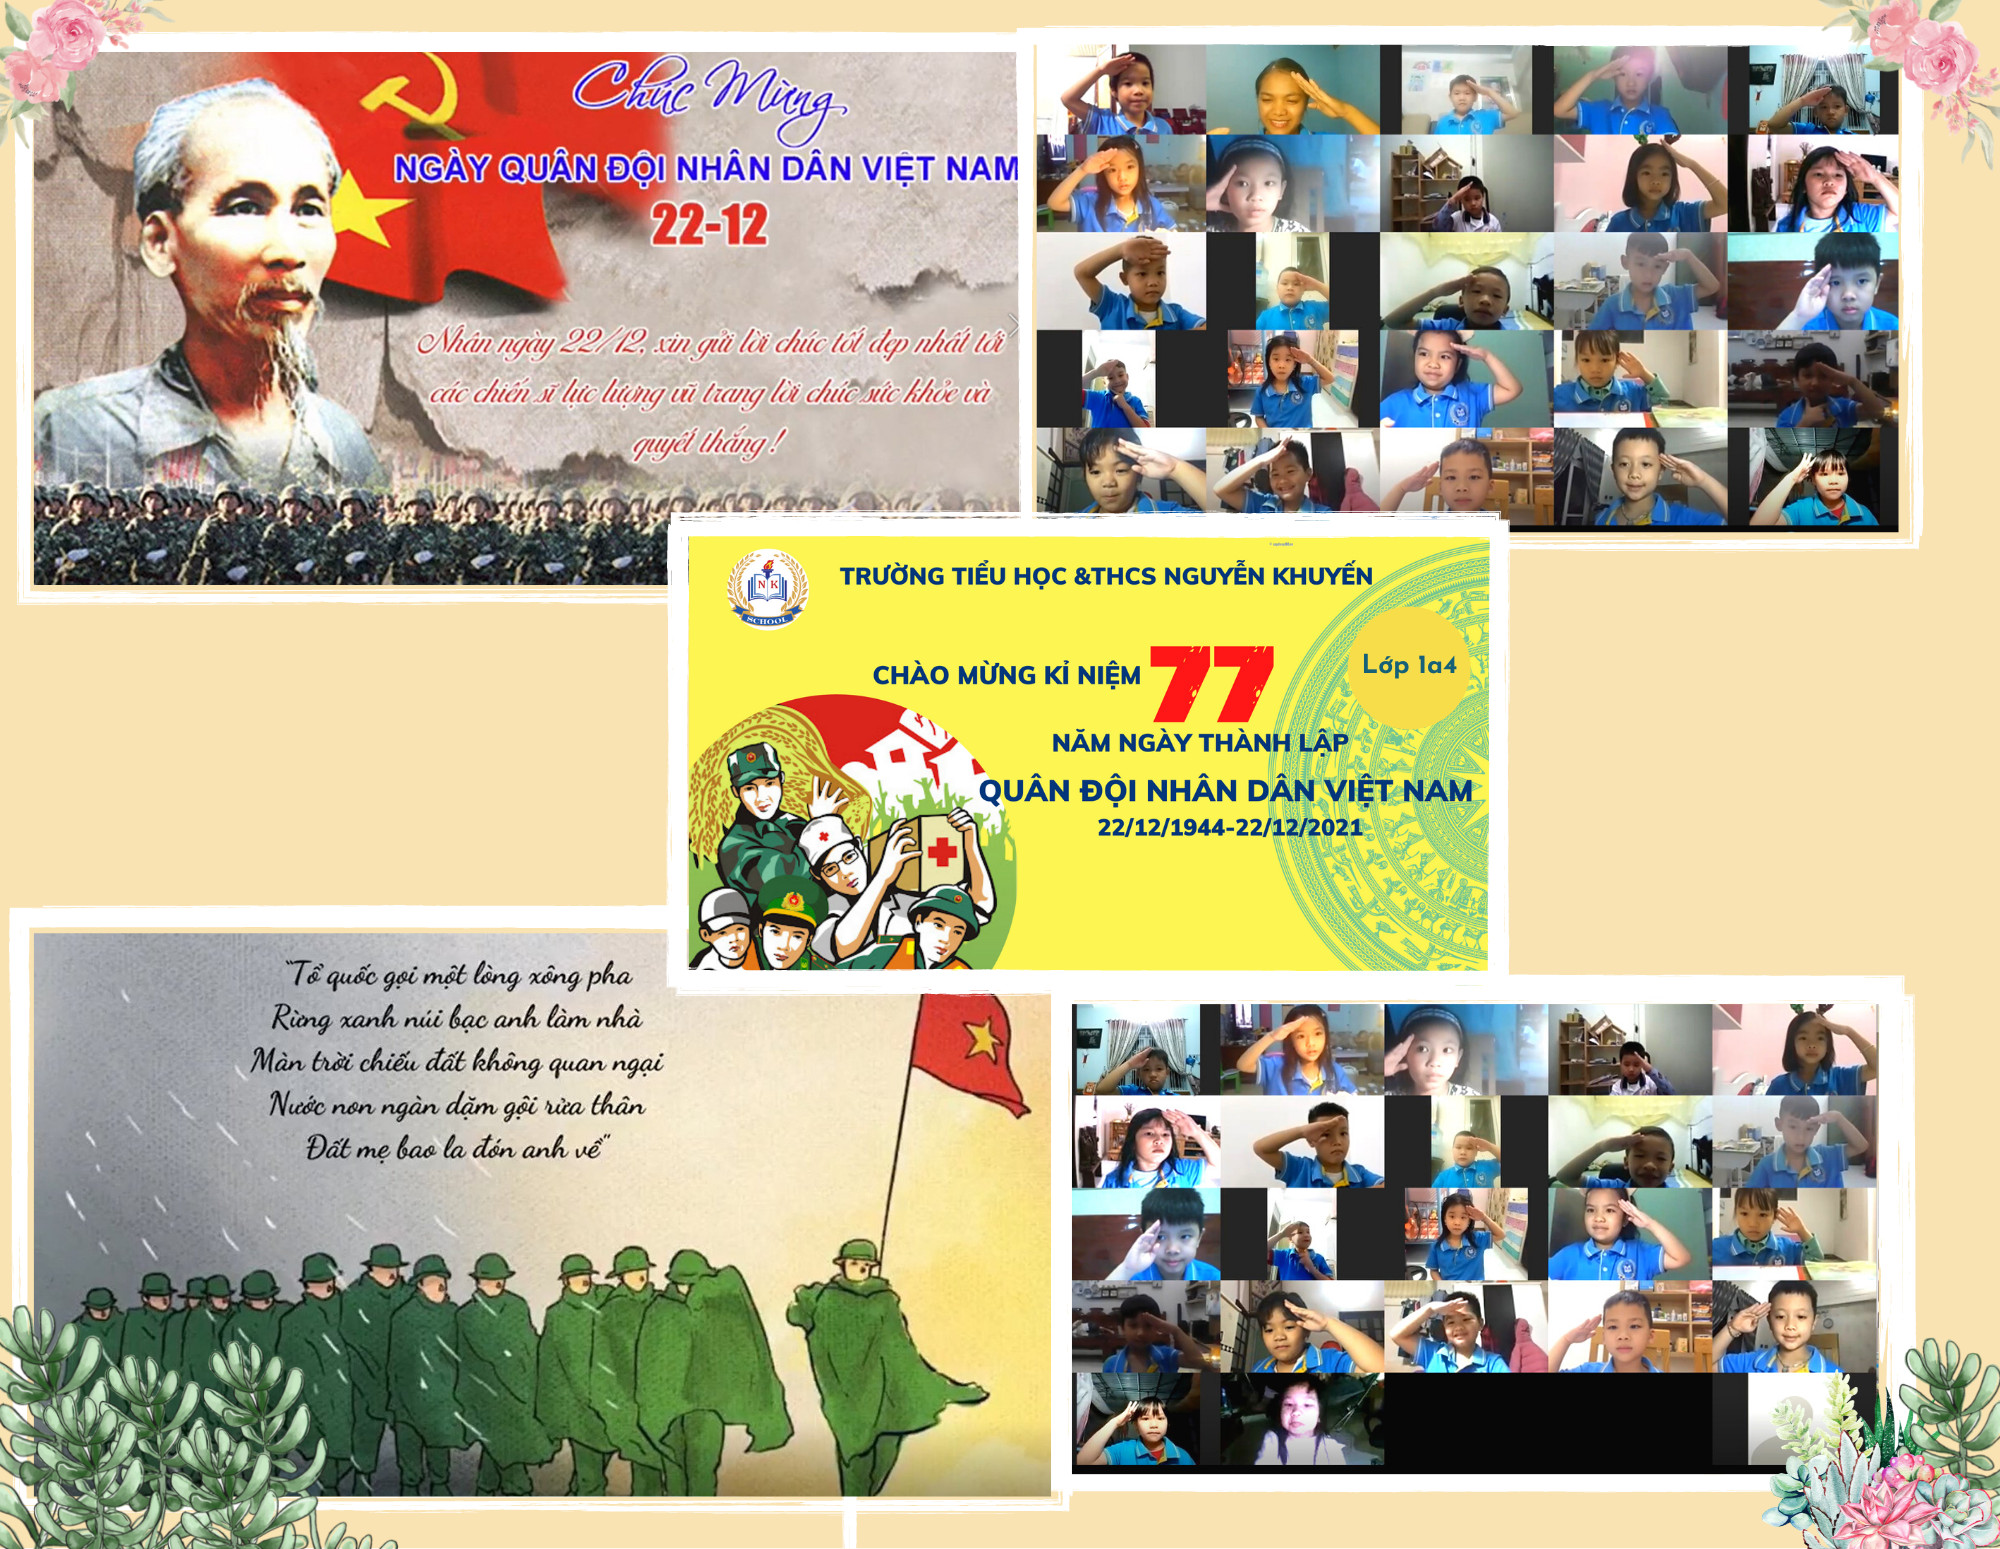 Tuyên truyền kỷ niệm 77 năm ngày thành lập Quân đội nhân dân Việt Nam (22/12/1944 - 22/12/2021) và 32 năm ngày Hội quốc phòng toàn dân (22/12/1989 - 22/12/2021)